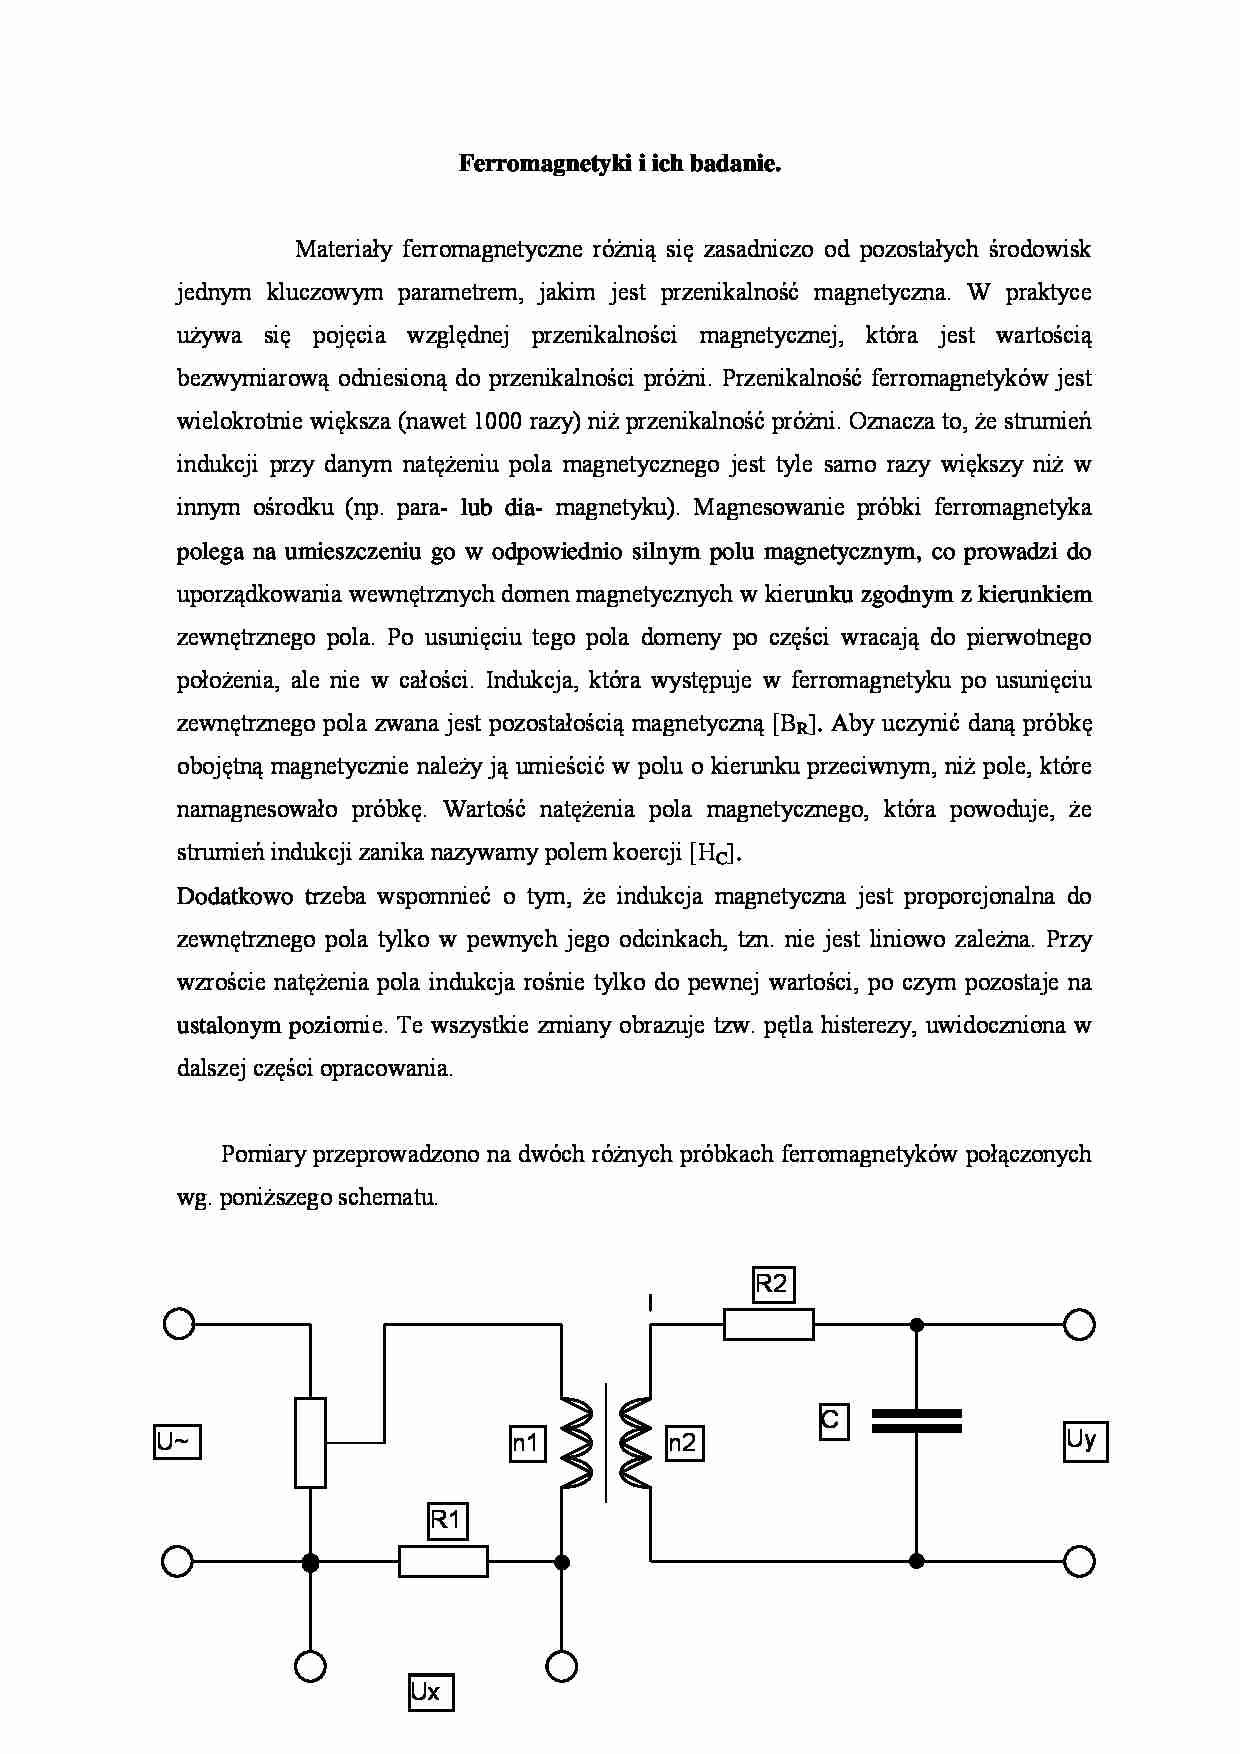 Ferromagnetyki i ich badanie - omówienie  - strona 1